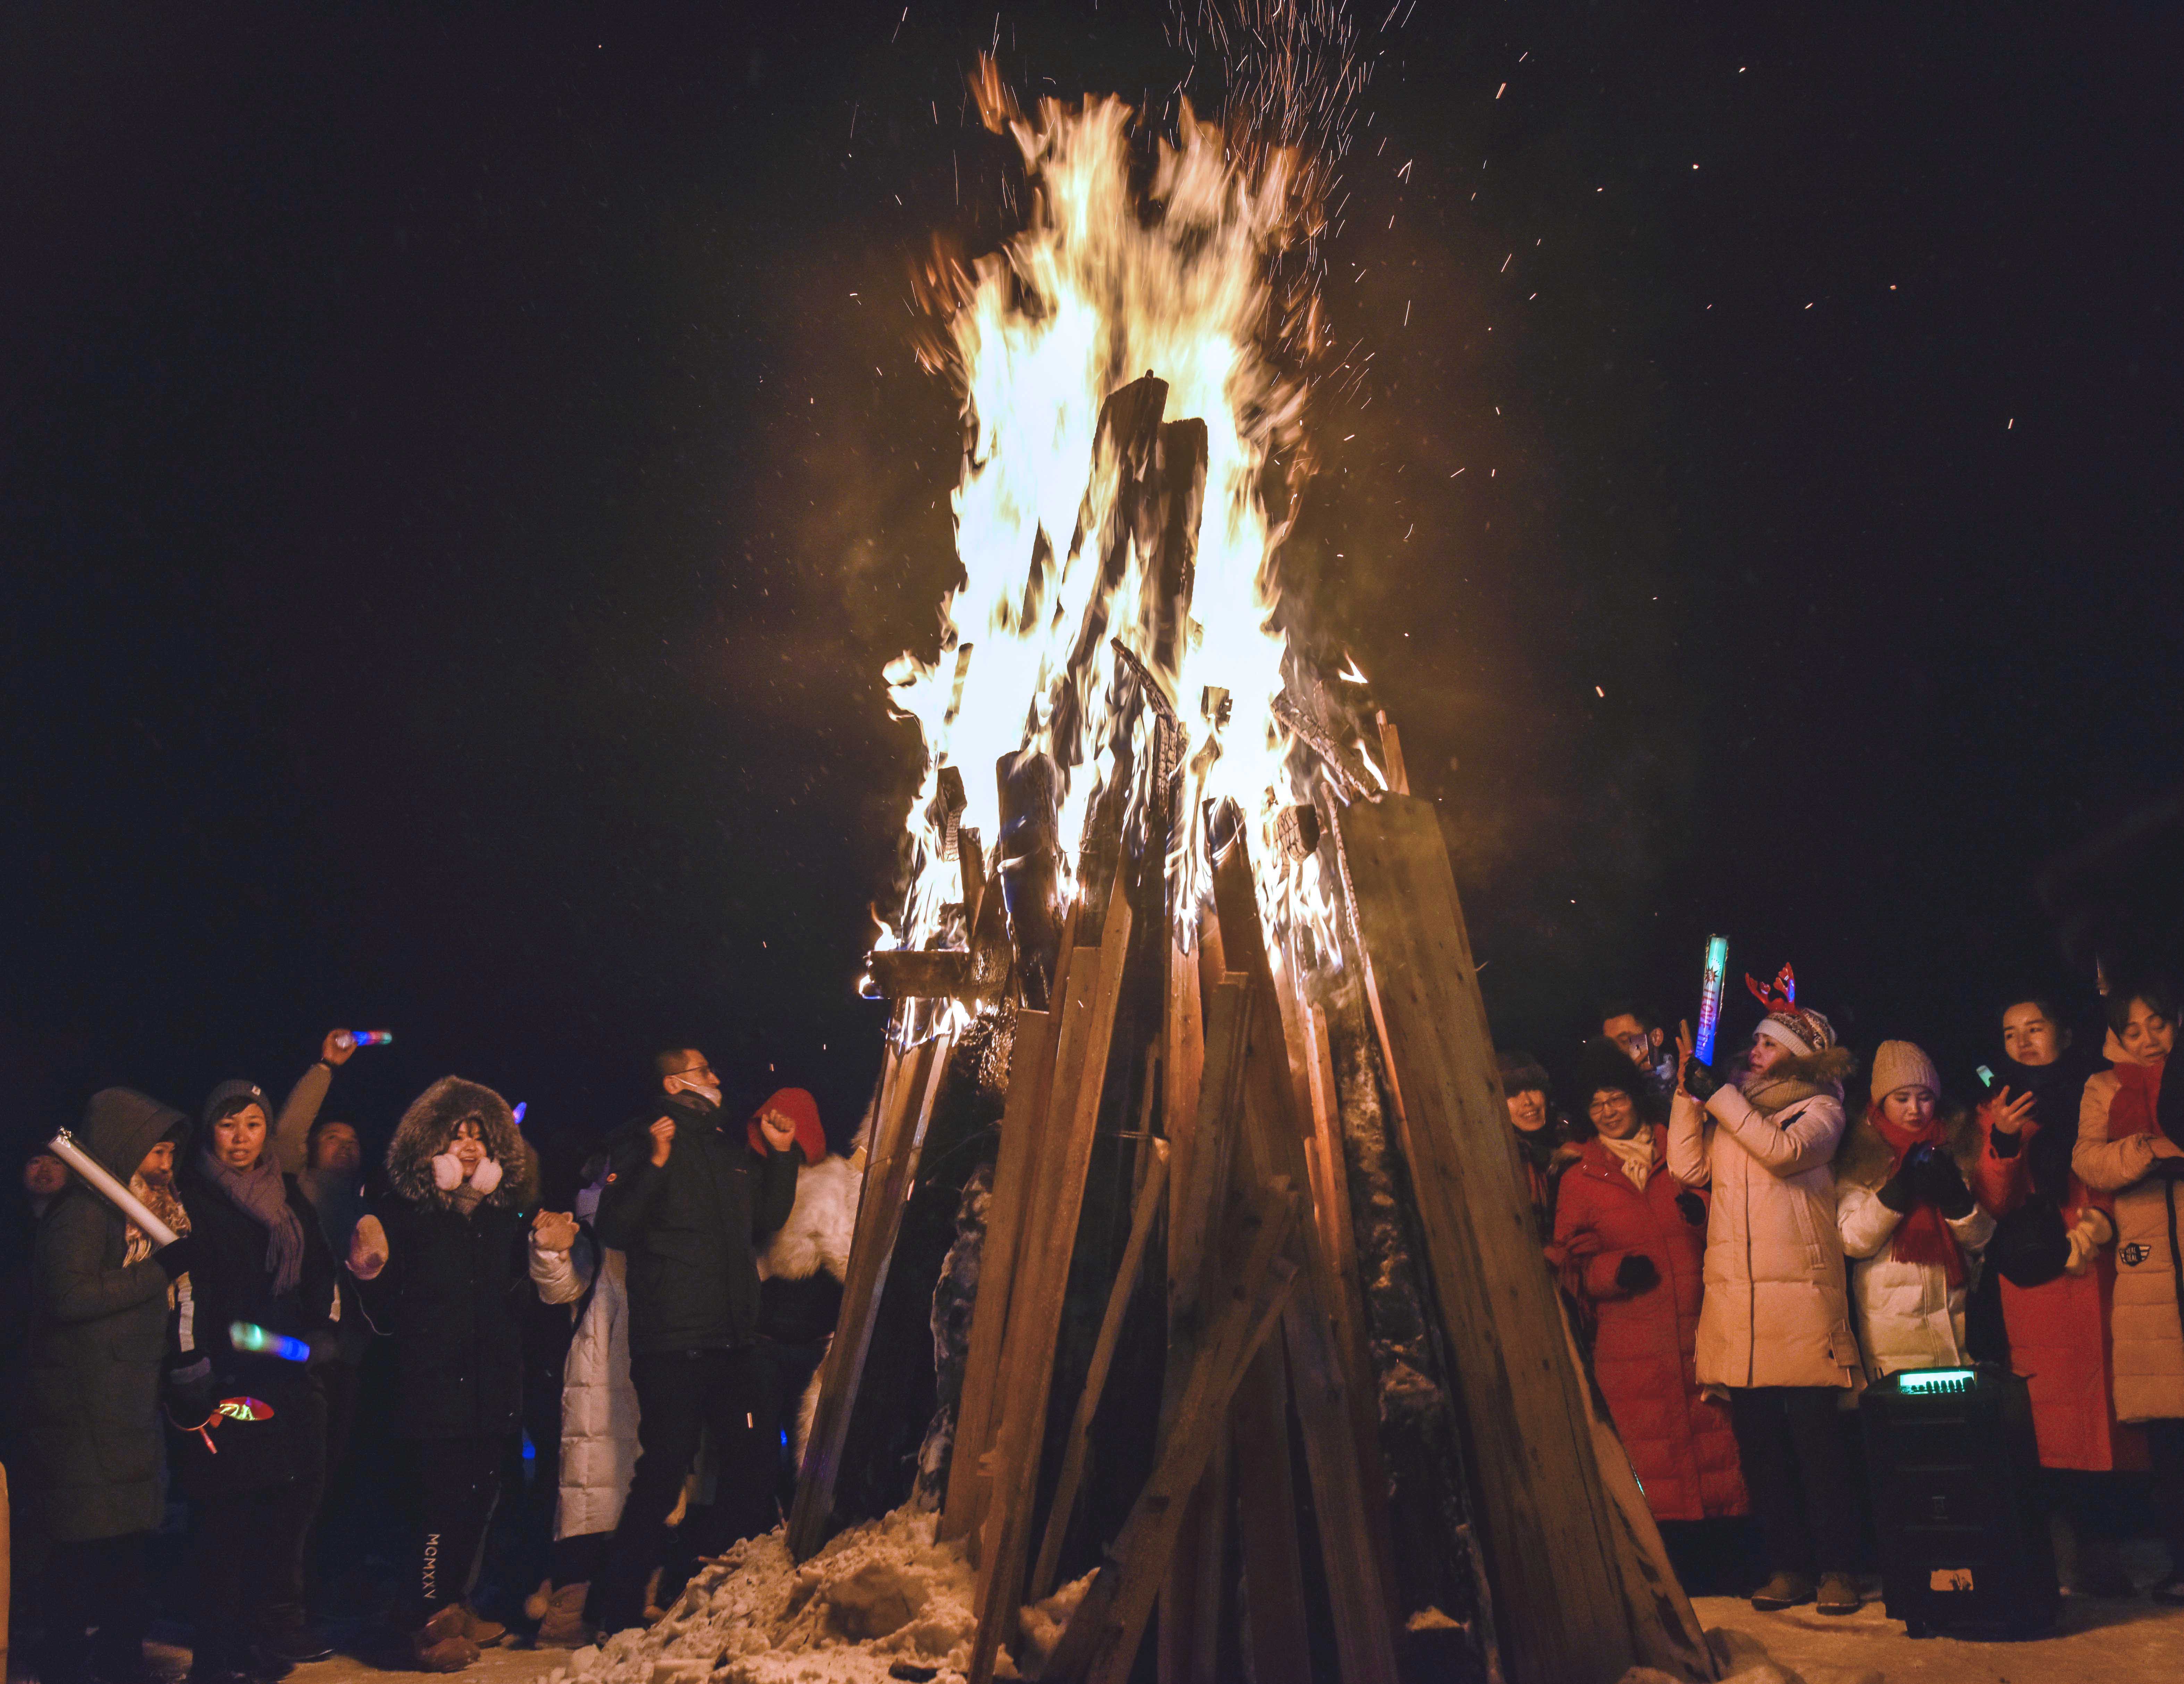 2018年12月31日晚,新疆禾木雪乡举办篝火迎新晚会,来自各地的油客